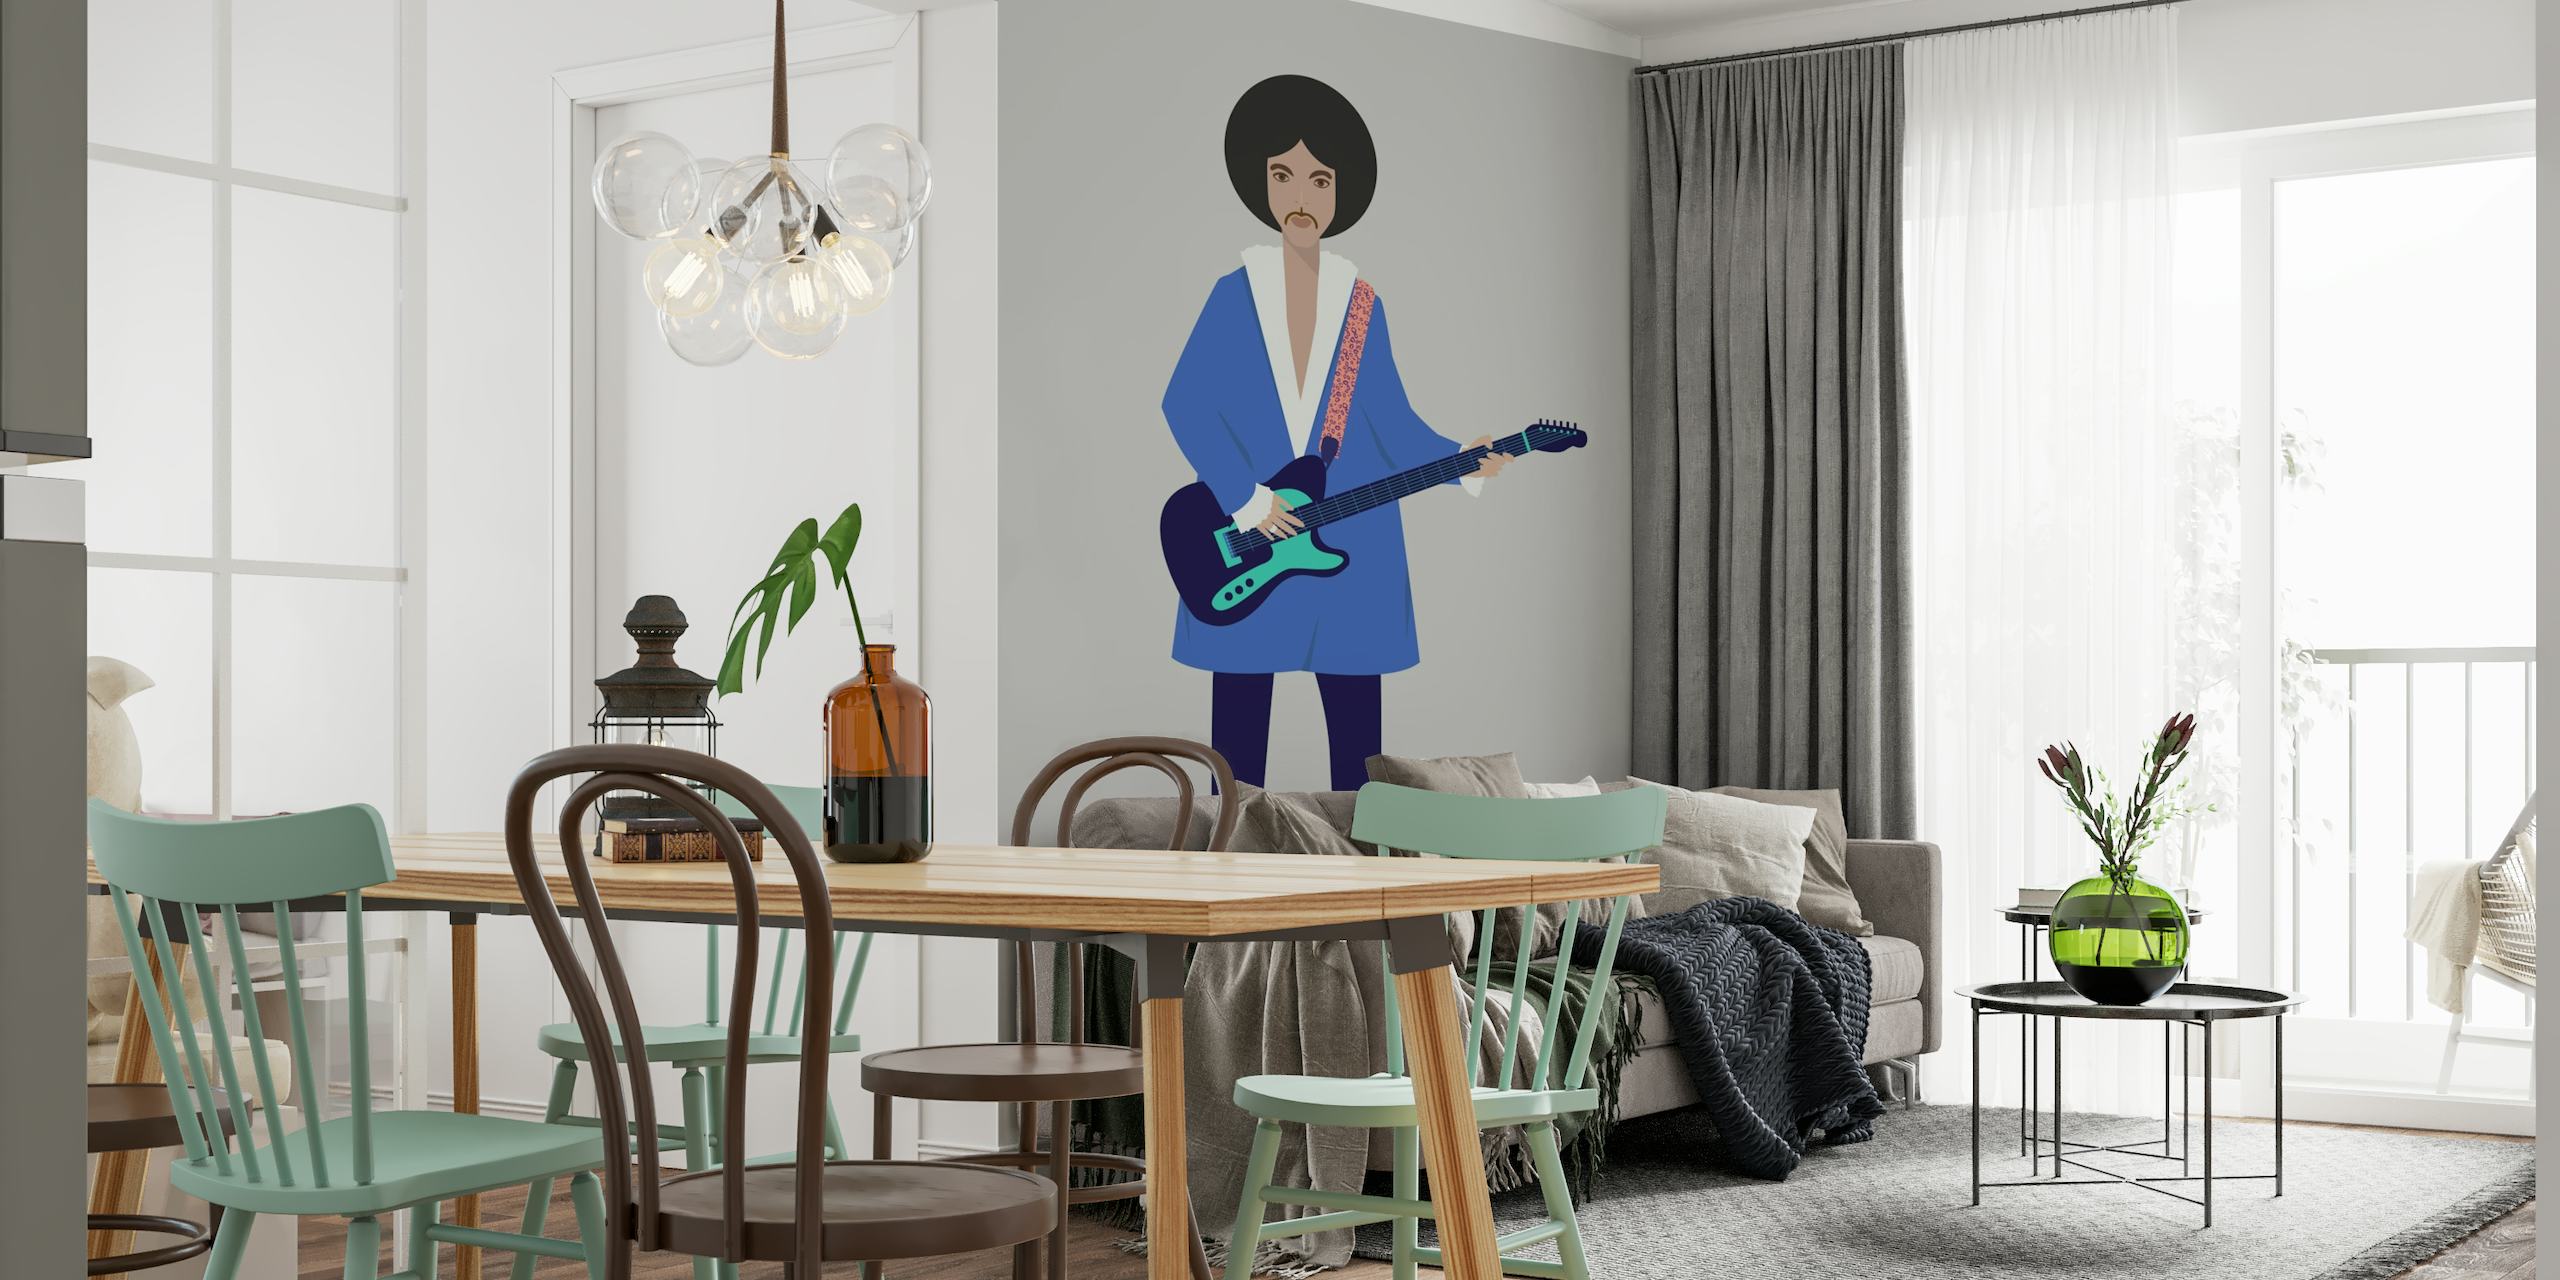 Illustratives Wandbild einer Person mit einer Gitarre, mit modernem künstlerischem Design